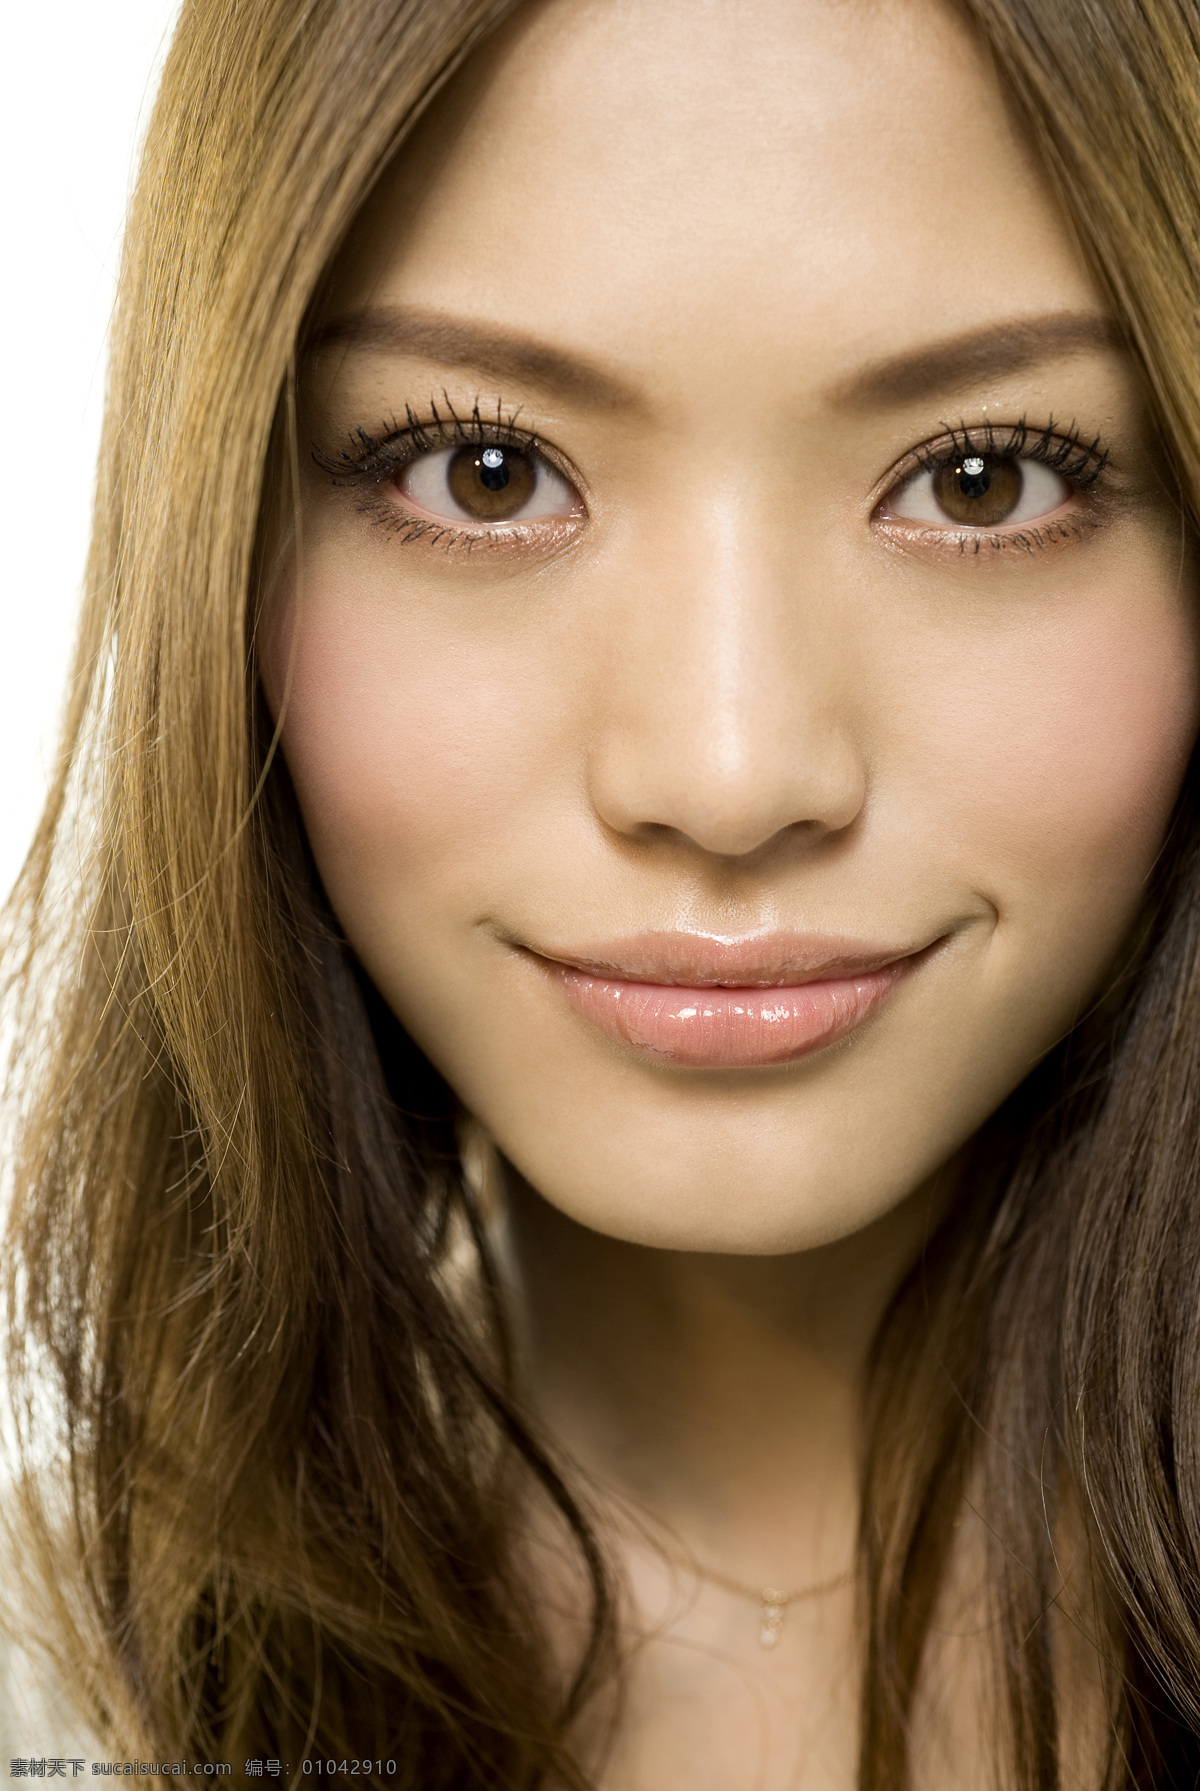 亚洲美女写真 日本 美容素材 超人气 日本美女 时装 模特 女孩 漂亮 美丽 公主 清纯 青春 甜美 气质 亚洲美女 写真集 人物摄影 人物图库